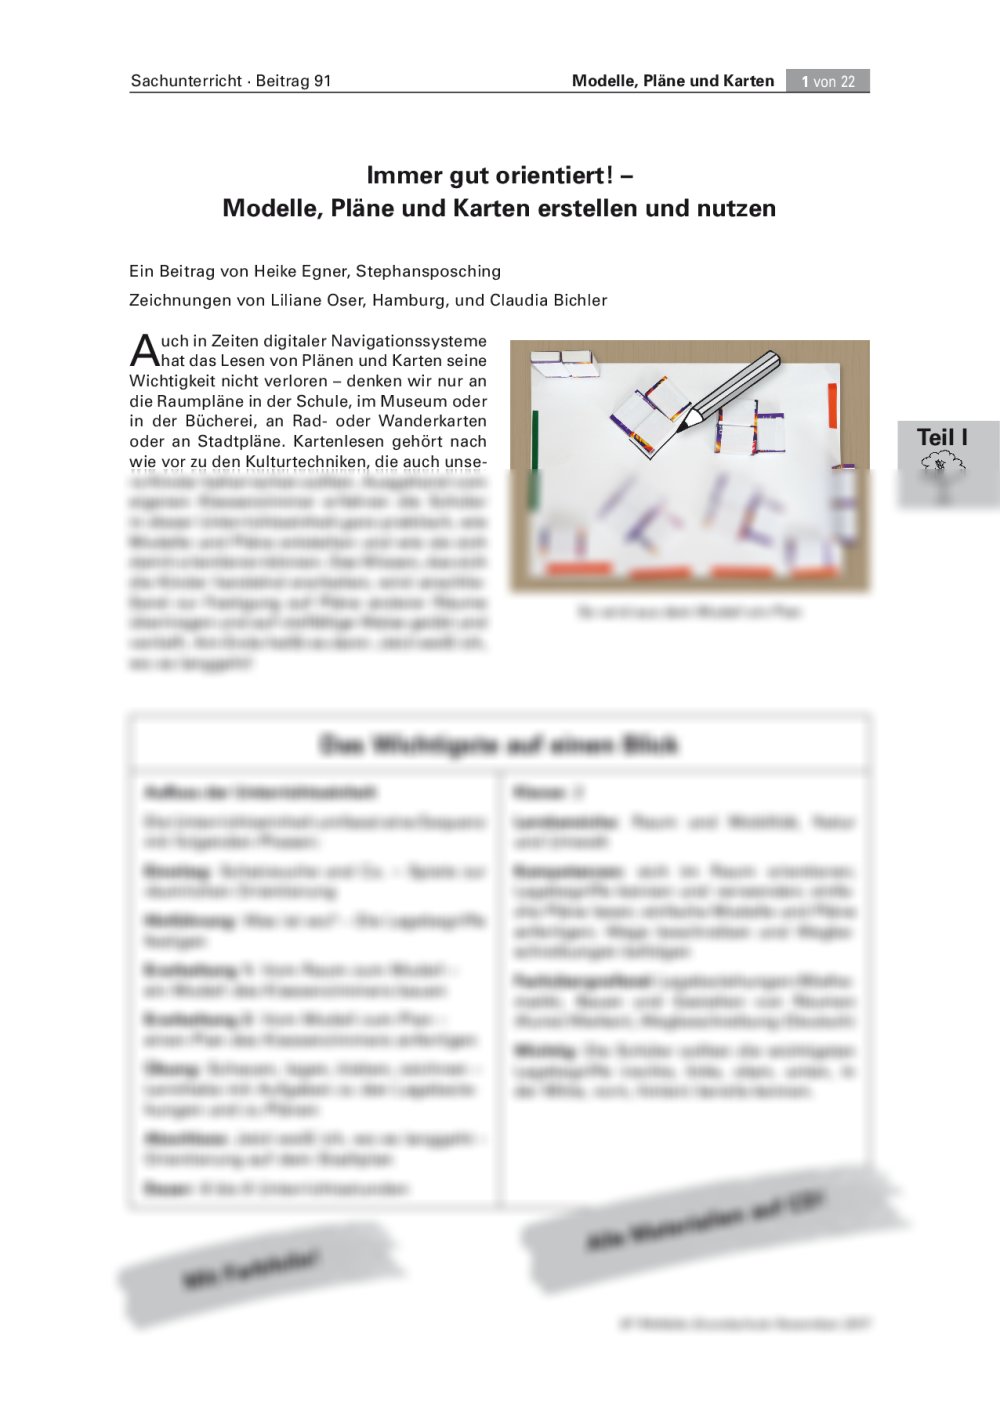 Modelle, Pläne und Karten erstellen und nutzen - Seite 1